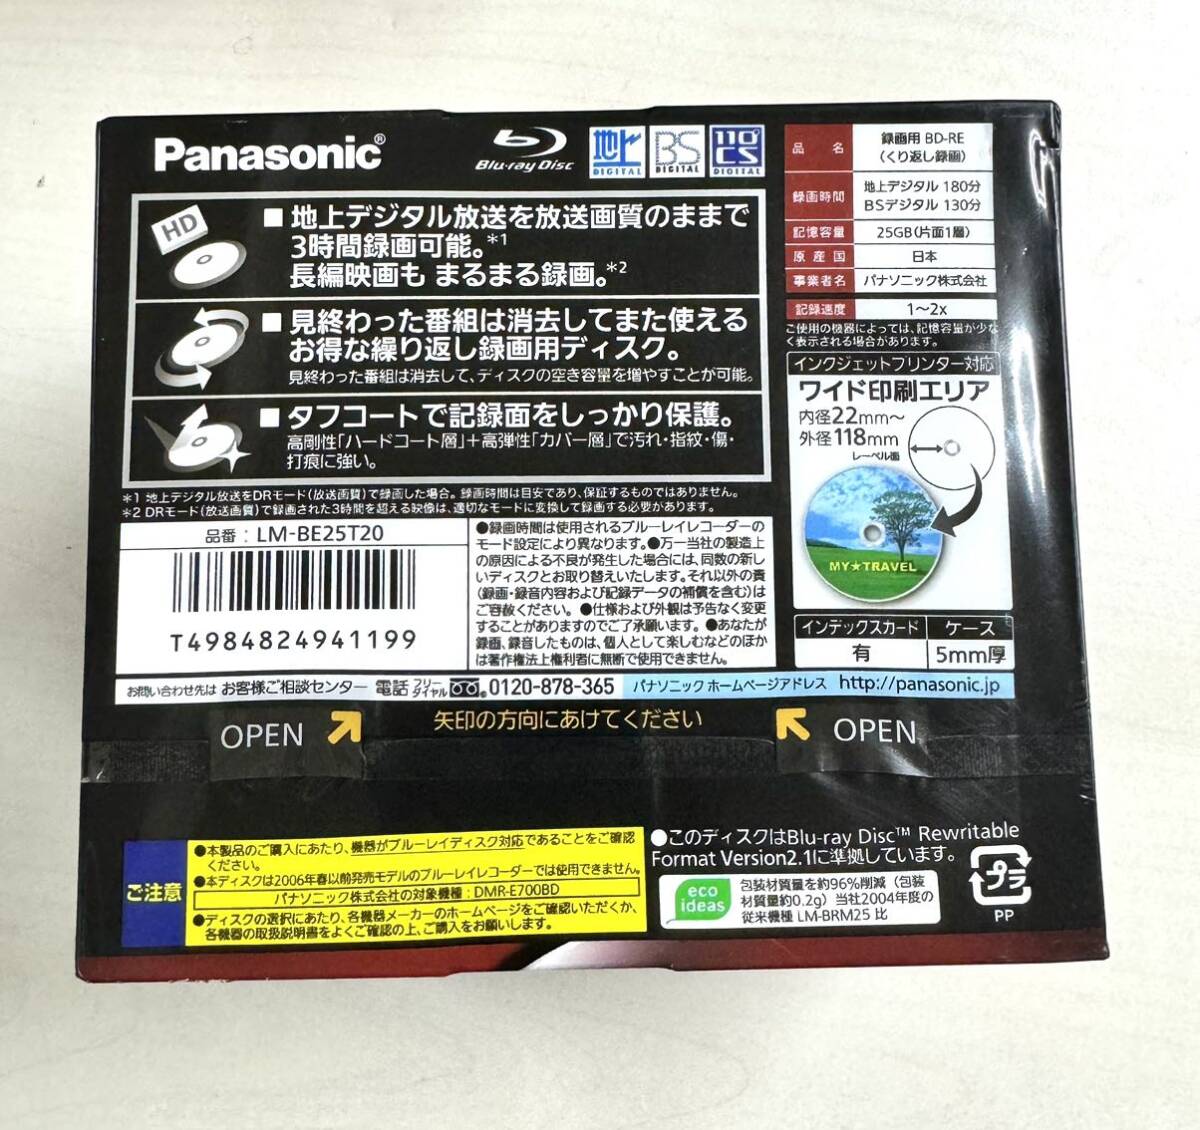 【新品未開封】Panasonic パナソニック 録画用2倍速ブルーレイディスク 25GB 20枚パックBD-RE LM-BE25T20 ⑥_画像3